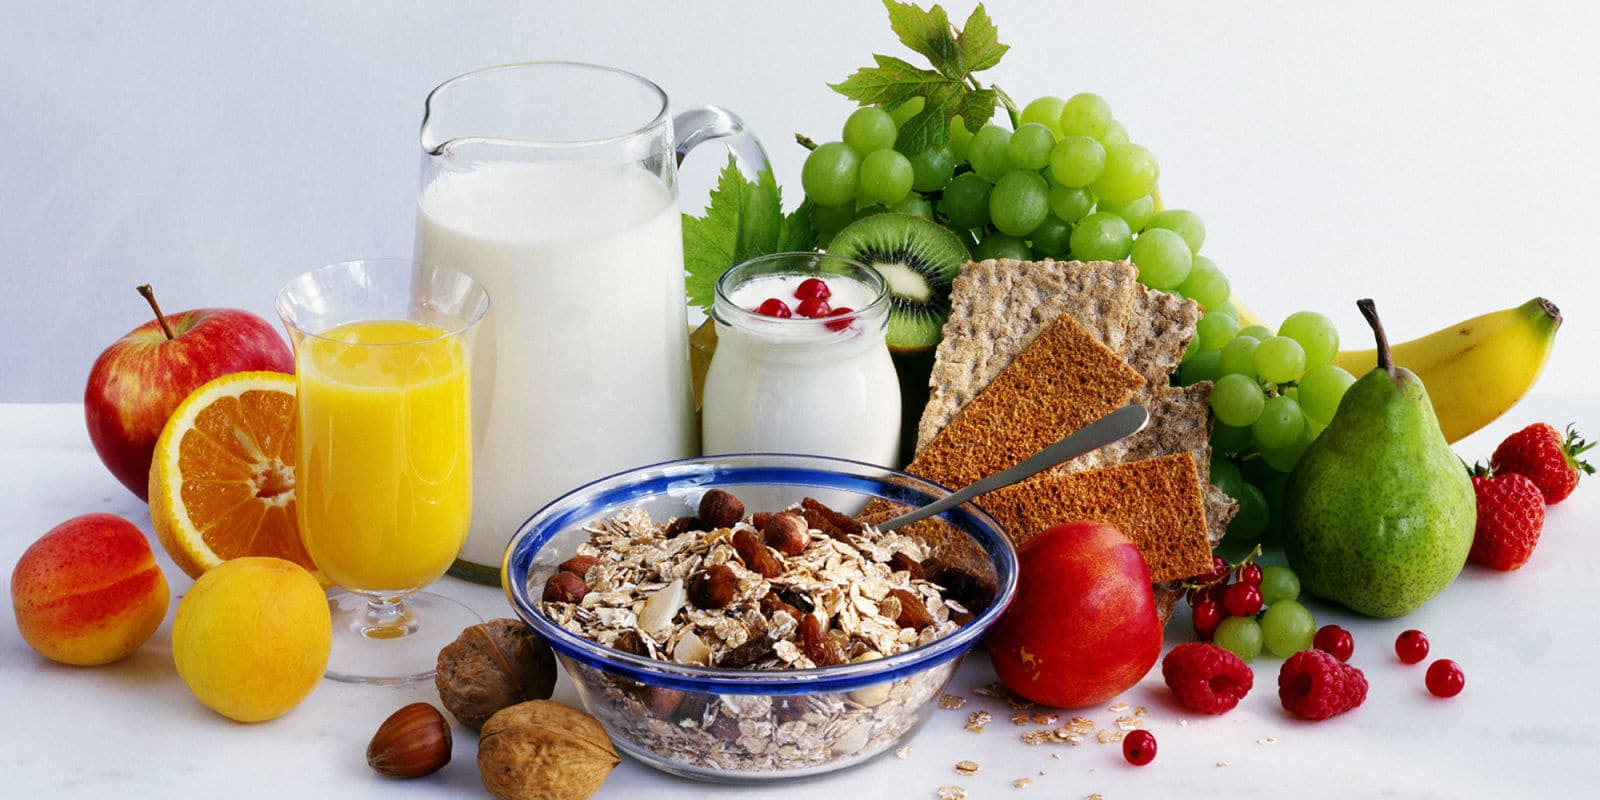 La colazione: 5 vegan ricette per una partenza salutare e gustosa